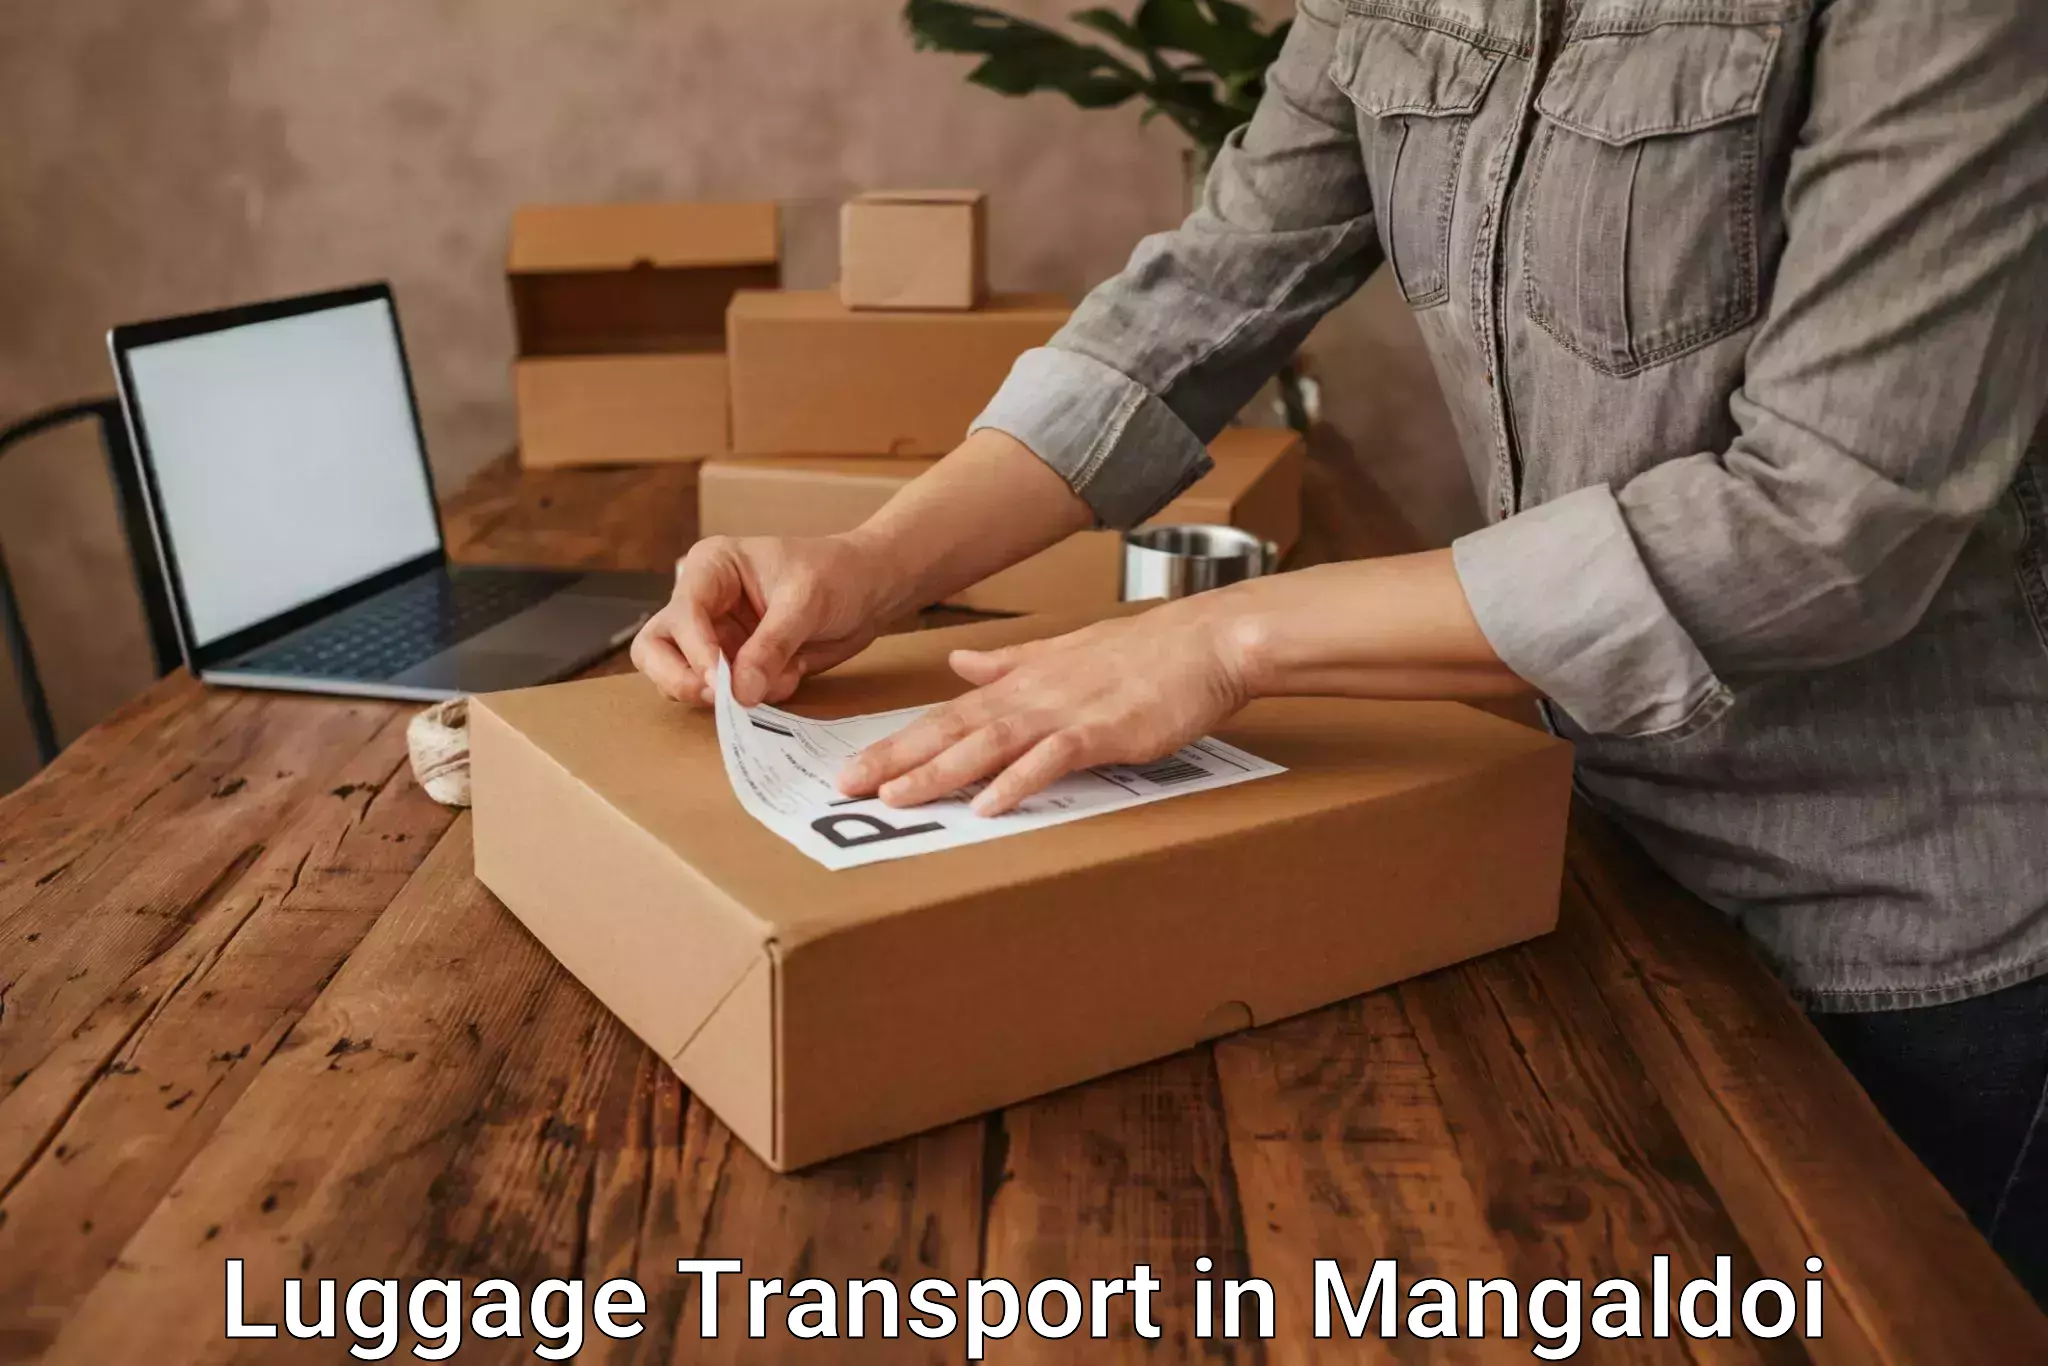 Urban luggage shipping in Mangaldoi